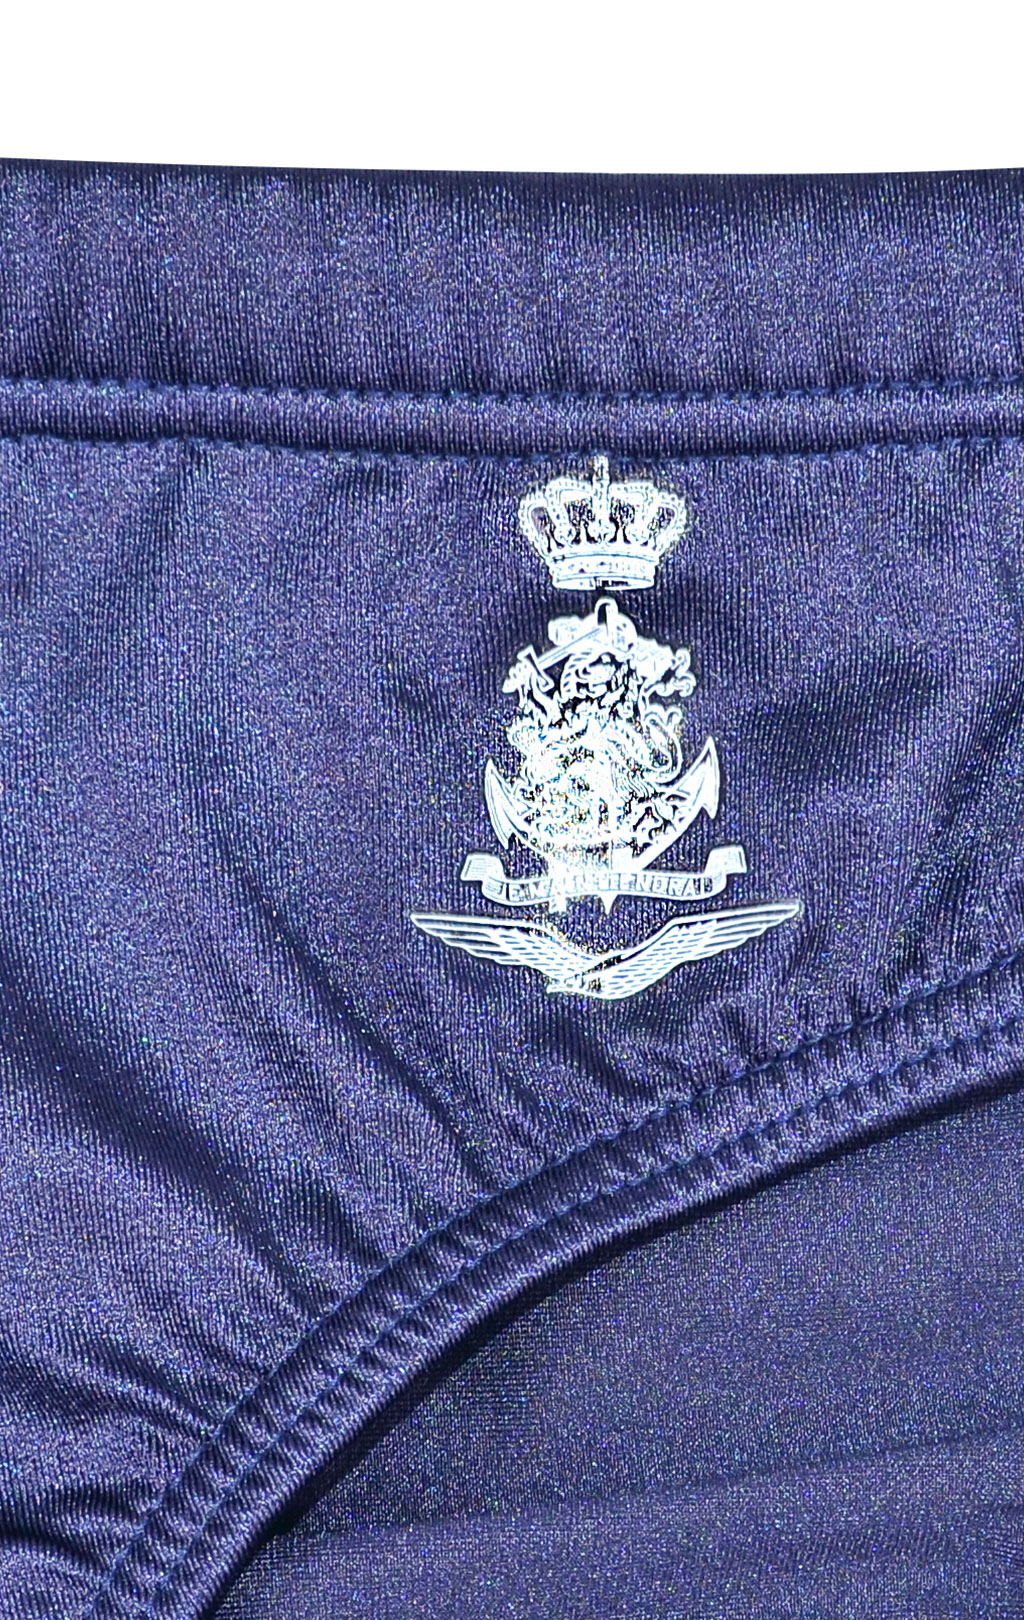 Плавки армейские navy Голландия